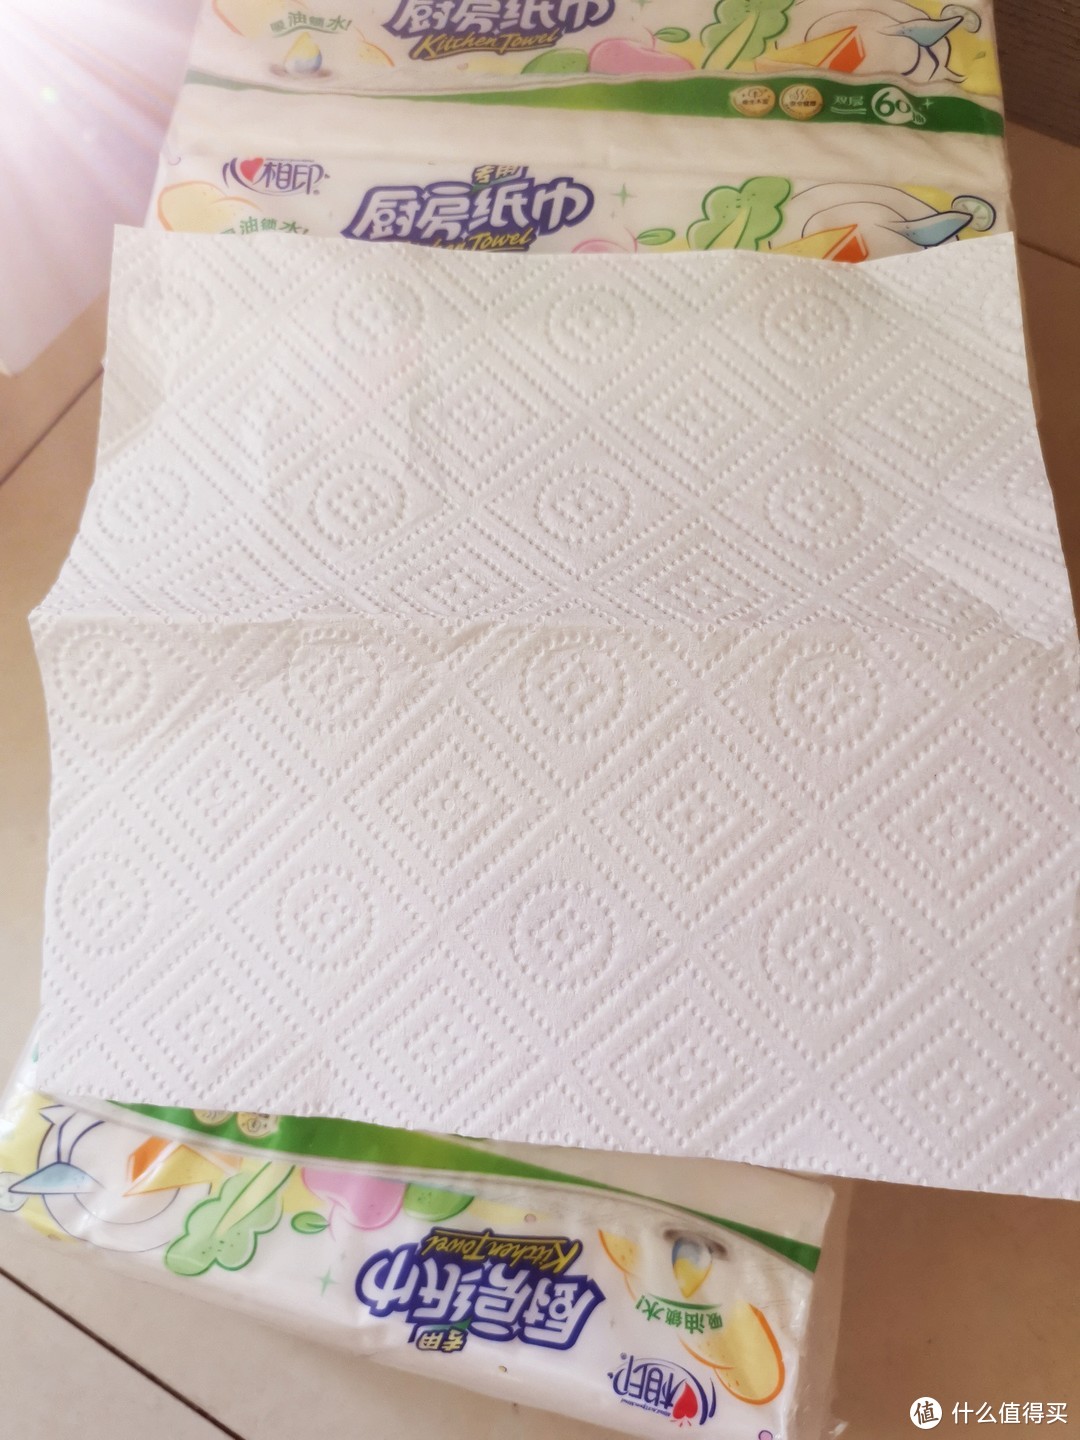 纸巾样式